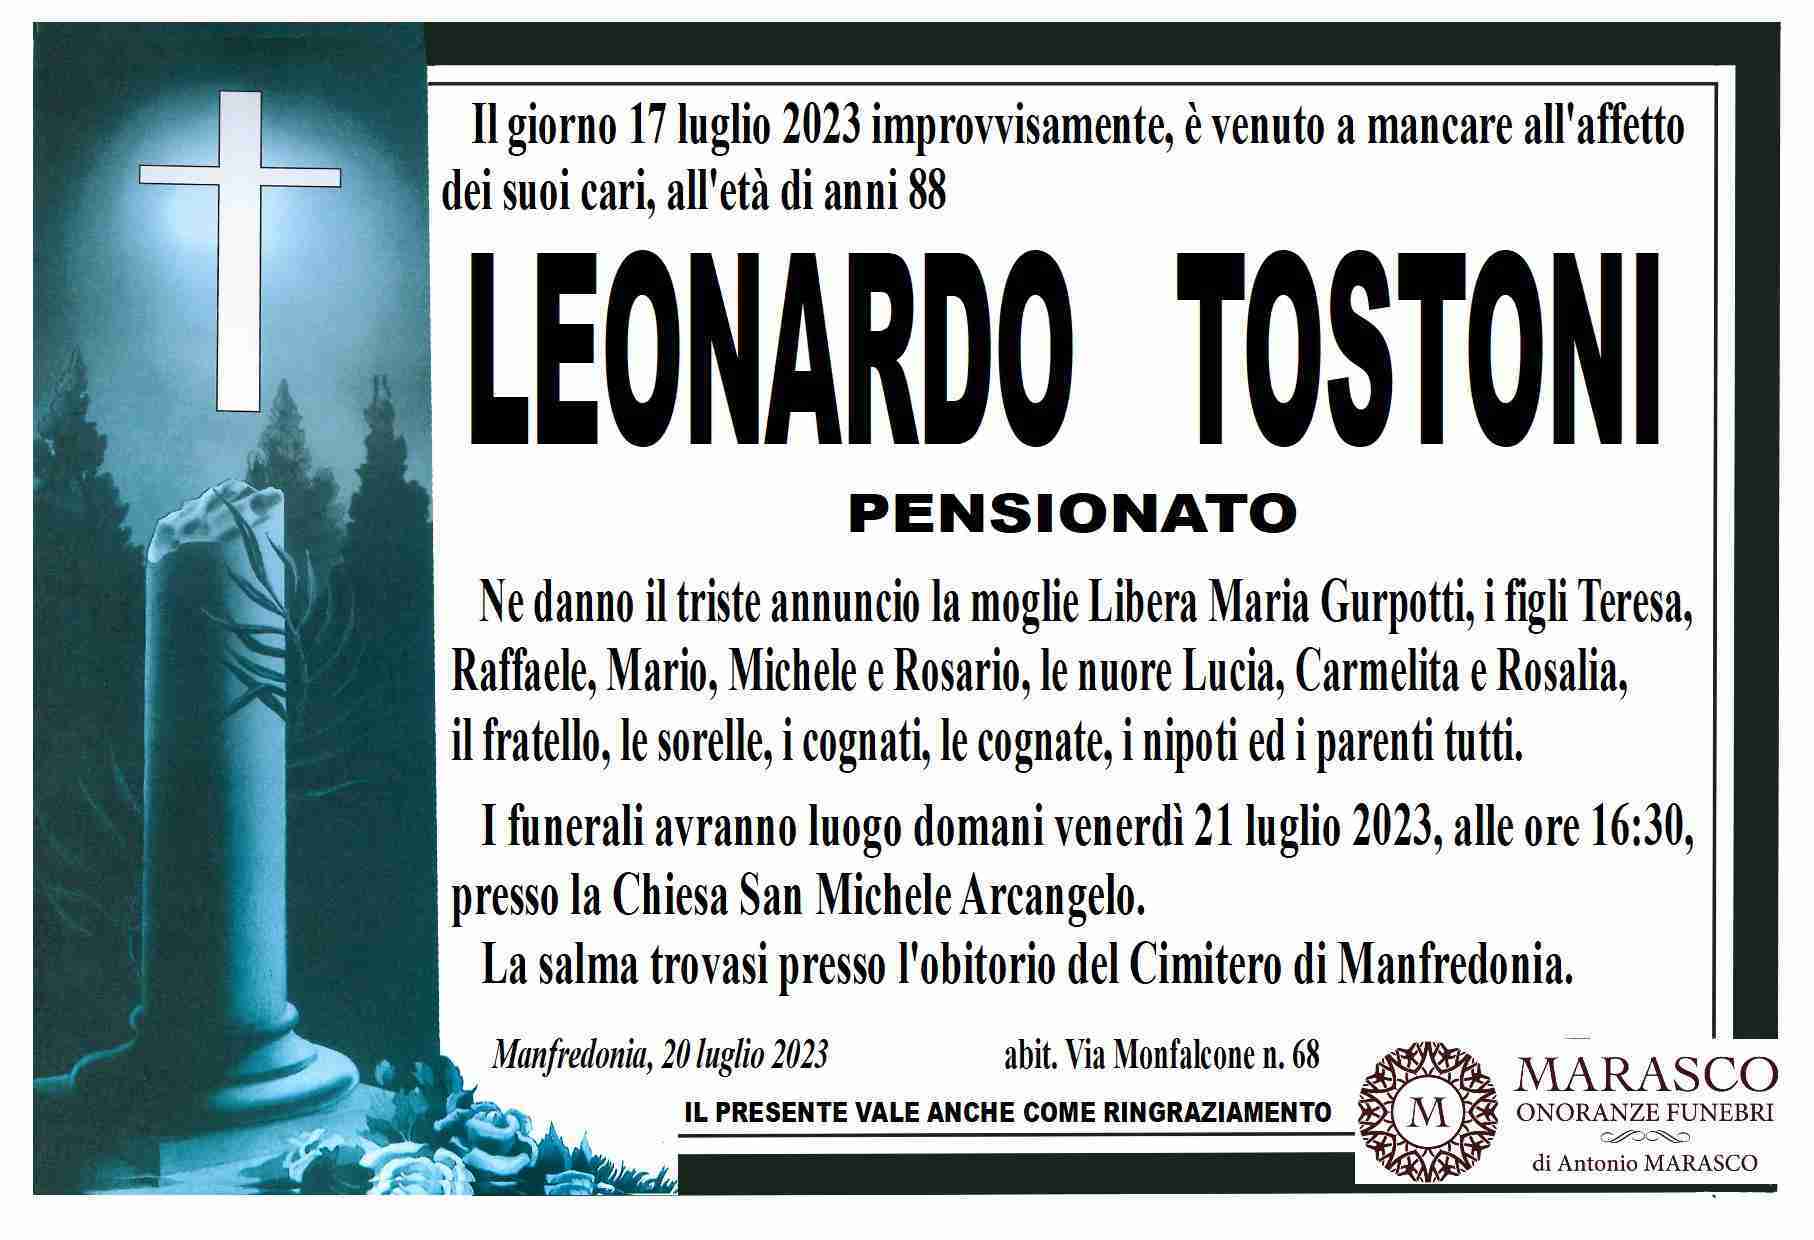 Leonardo Tostoni